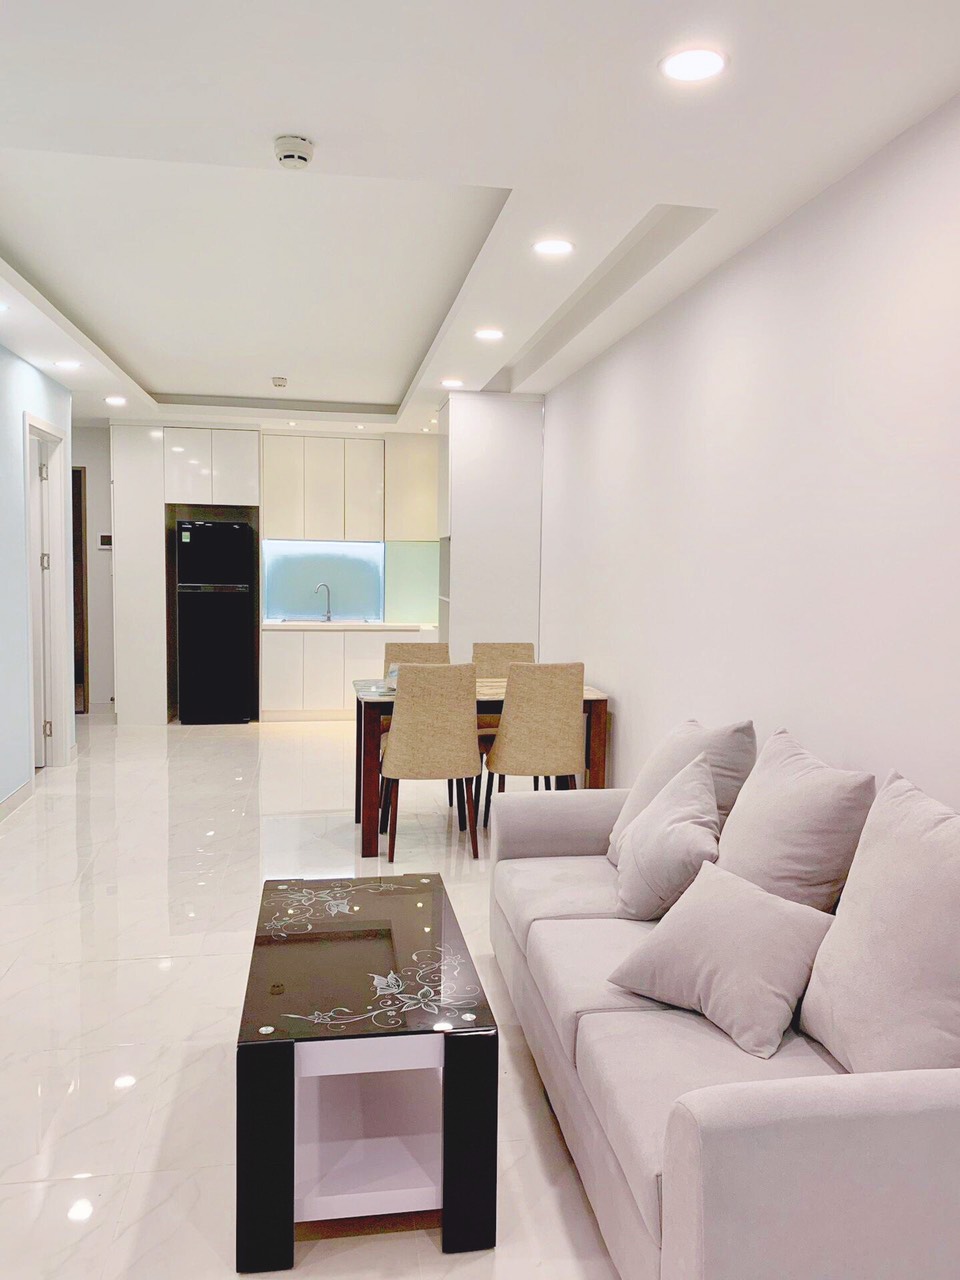 Cho thuê căn hộ Saigon South Residence, 2PN, Nhà Mới  100%, Free phí quản lý